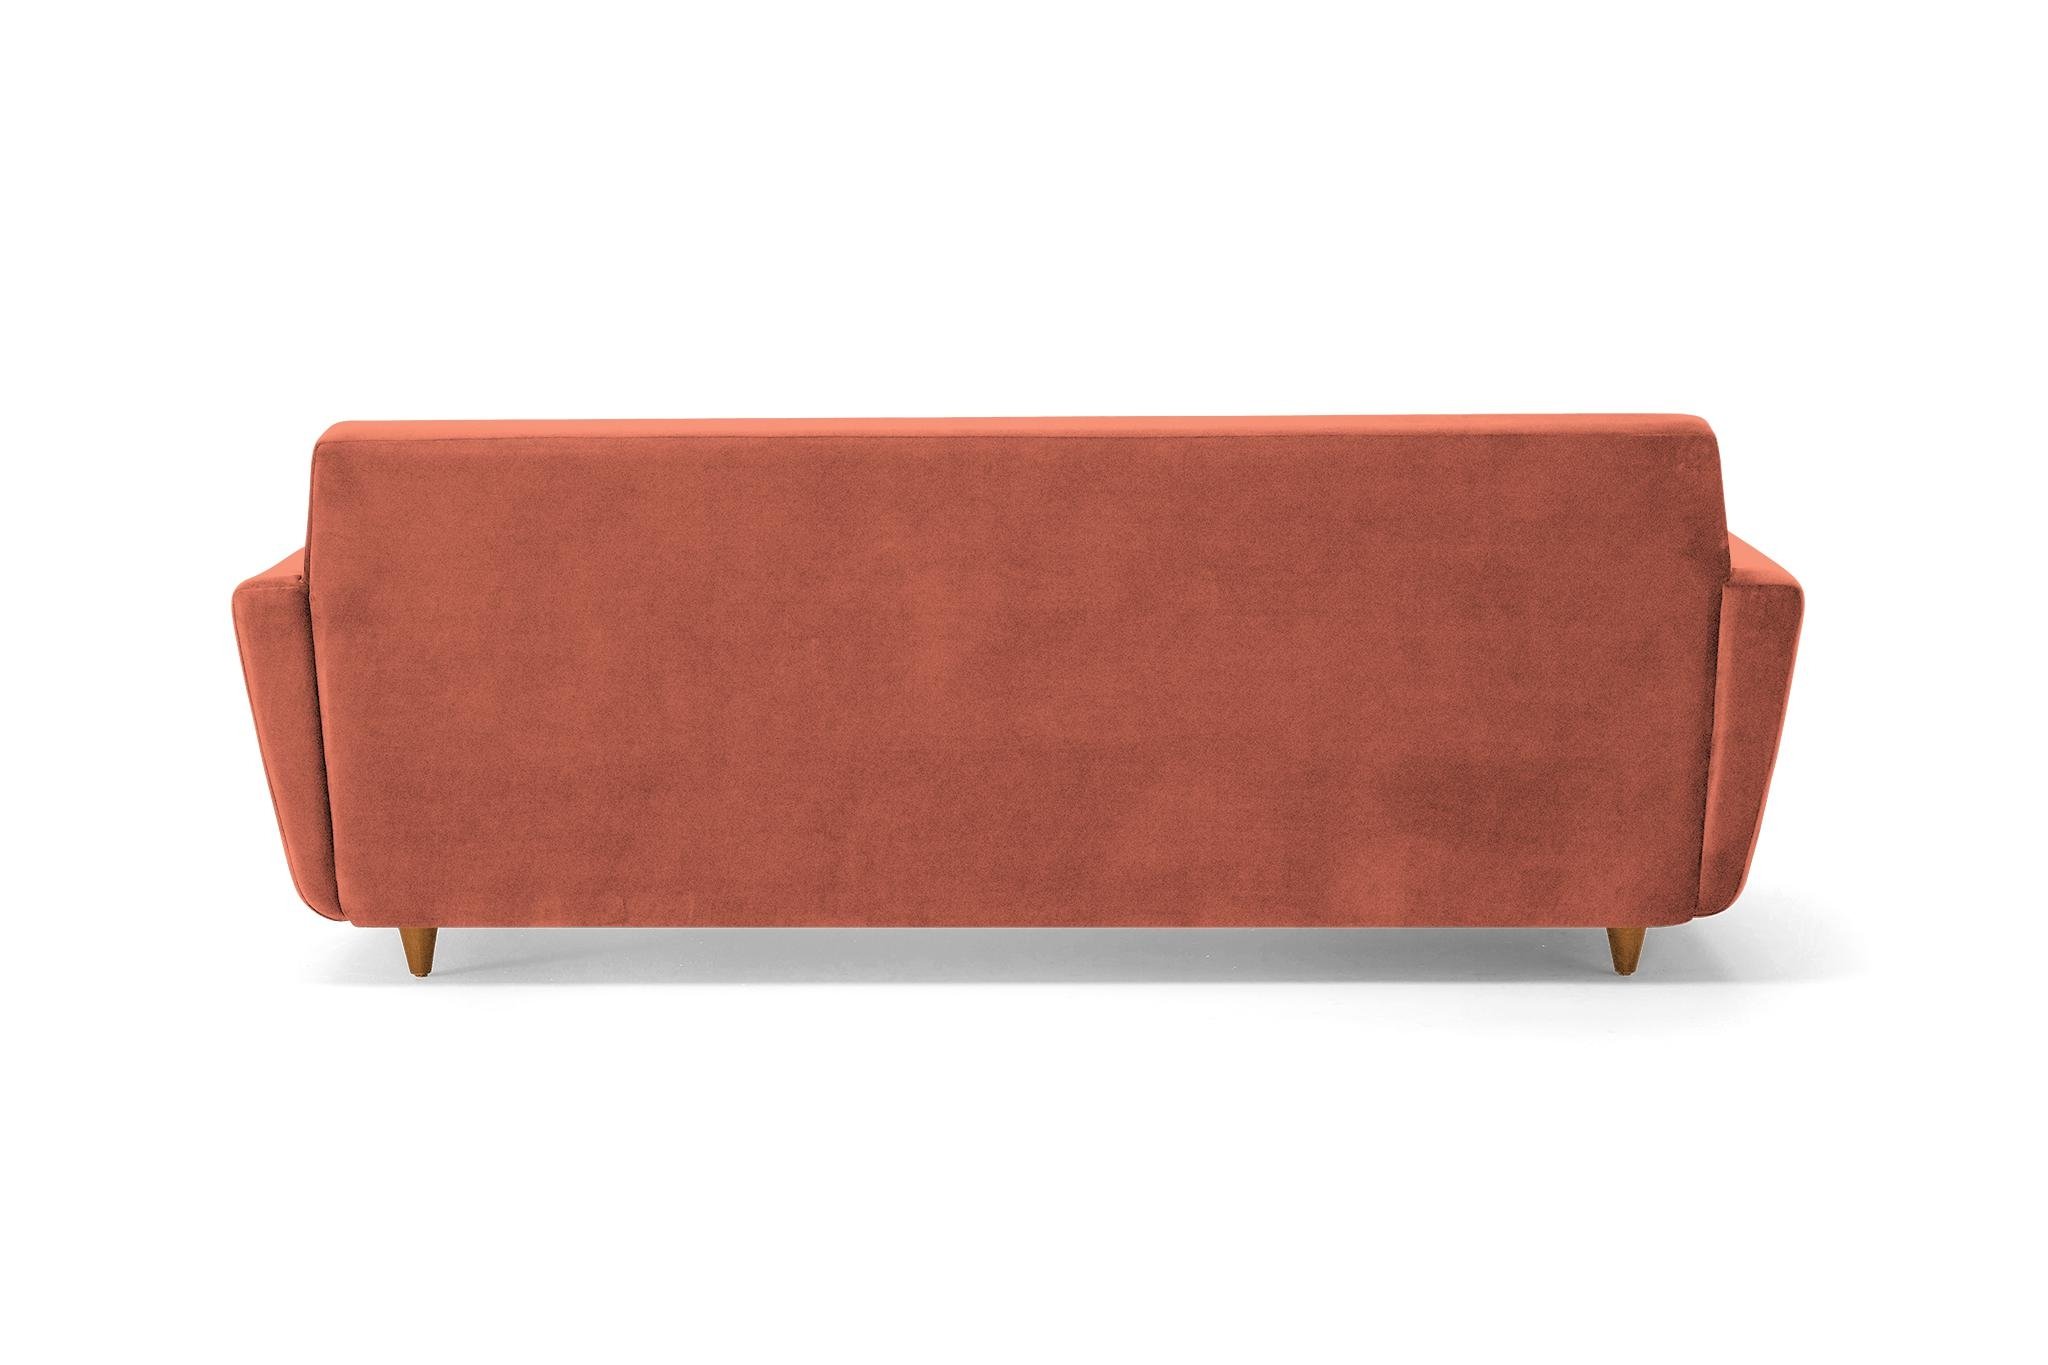 Orange Hughes Mid Century Modern Sofa with Storage - Key Largo Coral - Mocha - Image 4